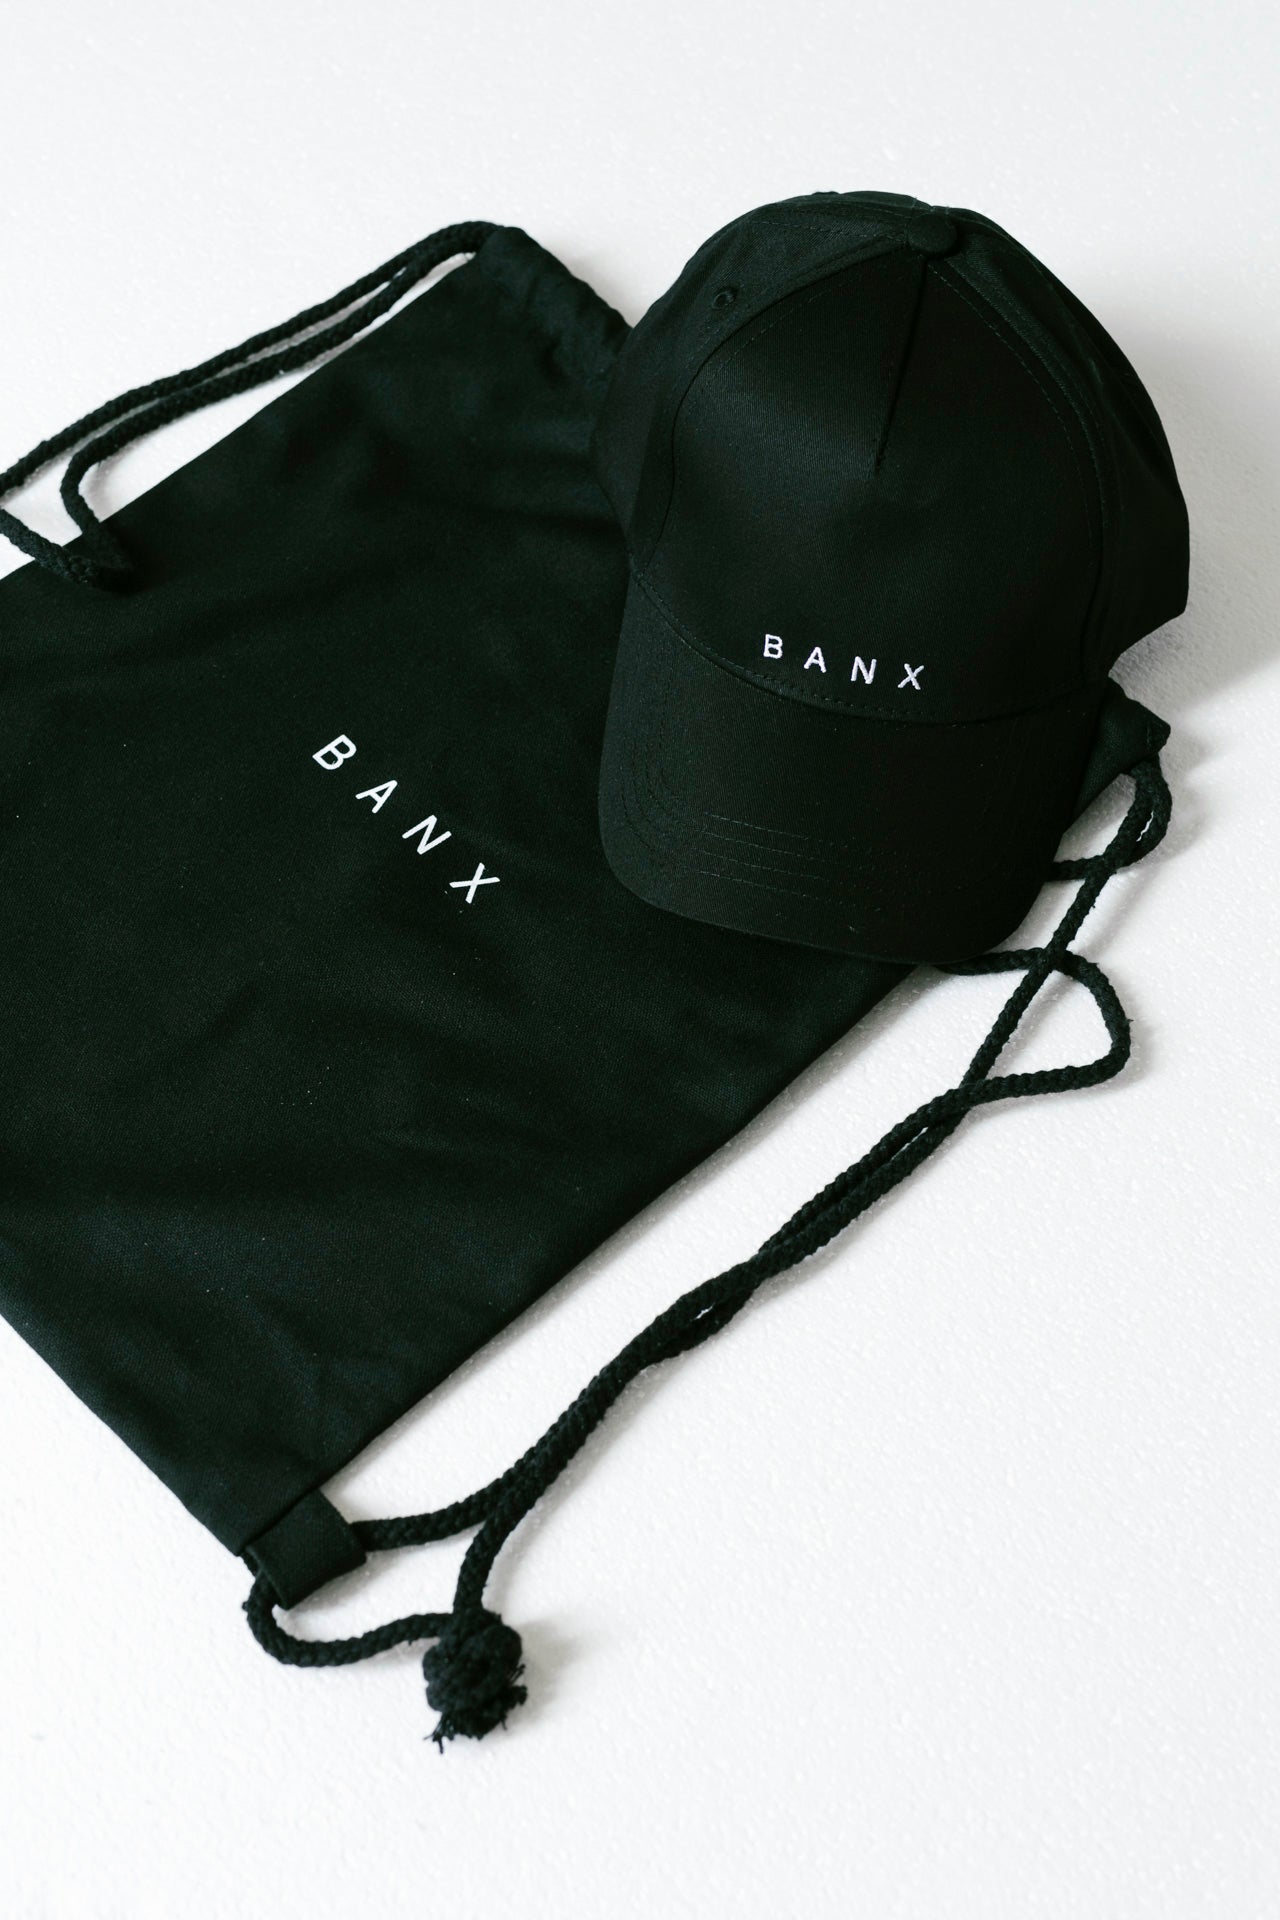 BANX DAD CAP - BANX TEXT